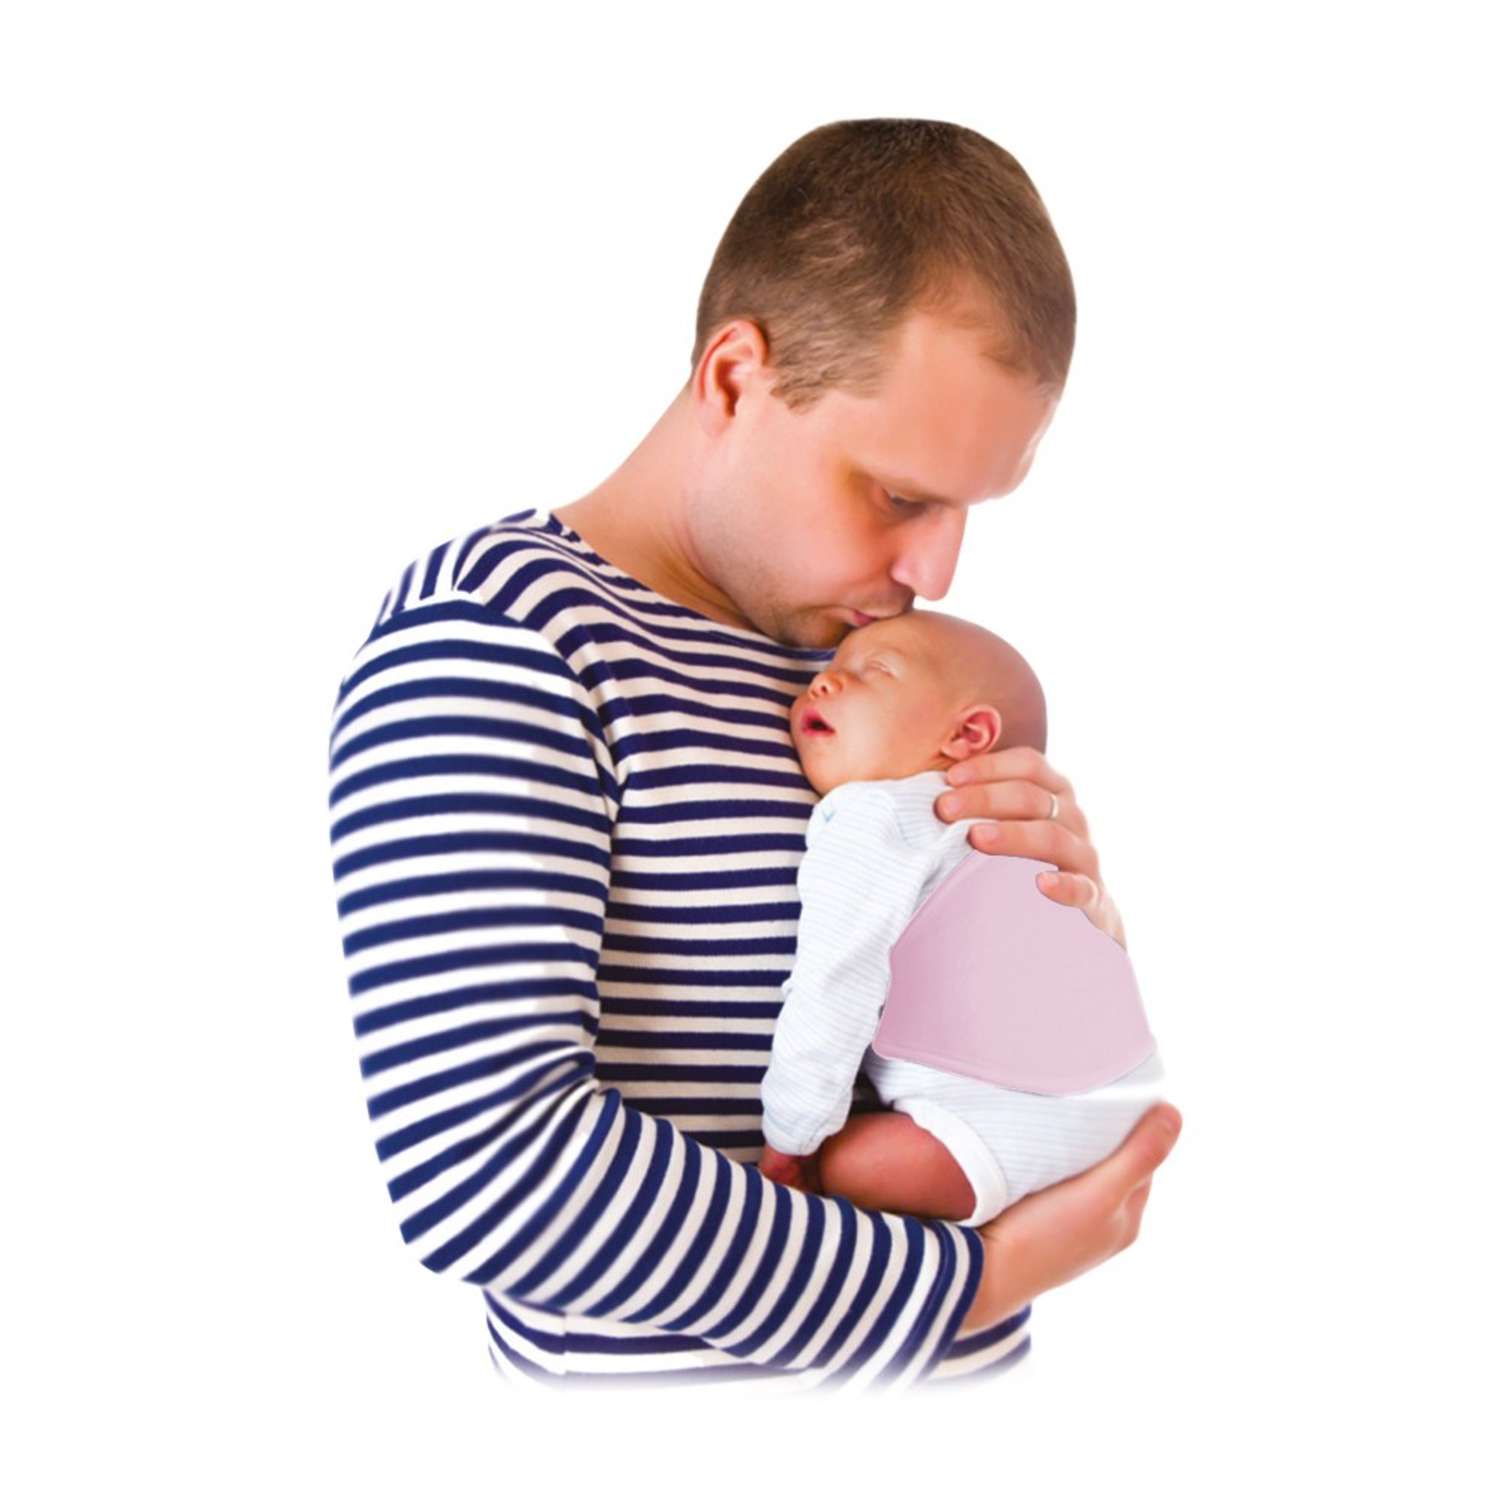 Пояс-протектор SEVIBEBE для поддержки спинки новорожденного и предотвращения колик - фото 2